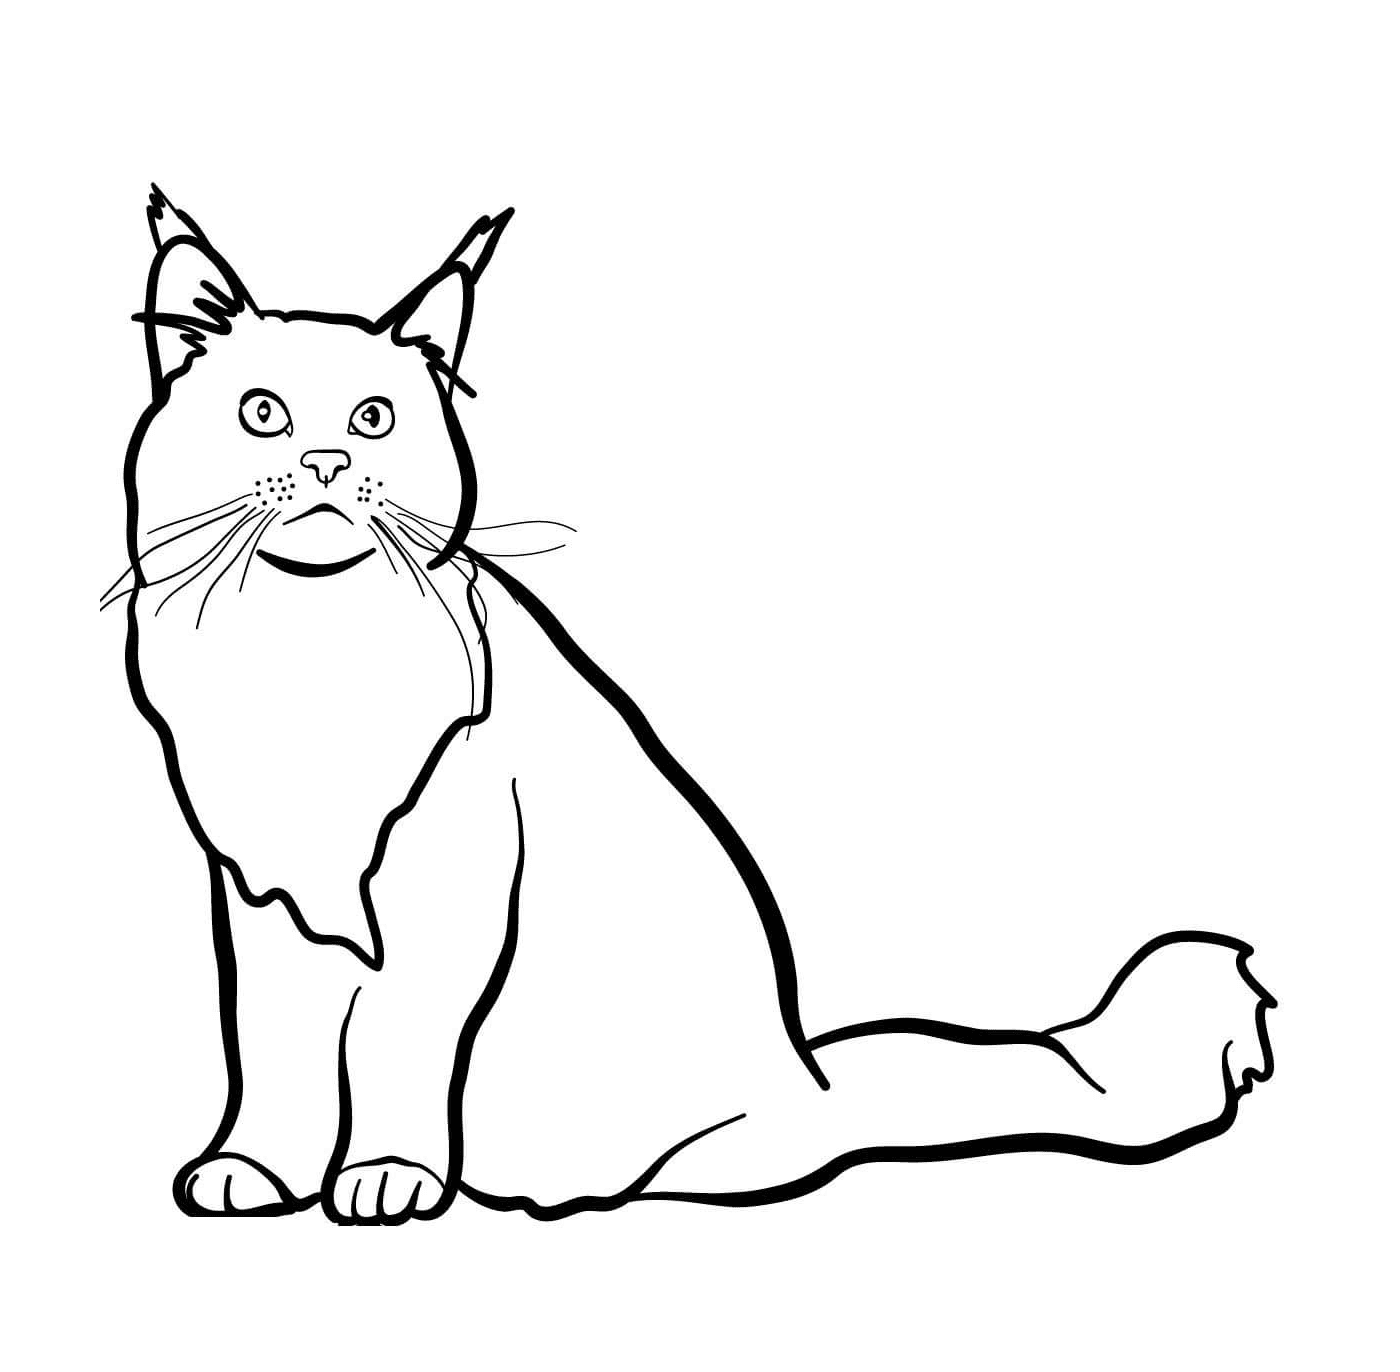 coloriage Le chat maine coon est une race de chat a poil mi long originaire de l'Etat du Maine aux Etats Unis